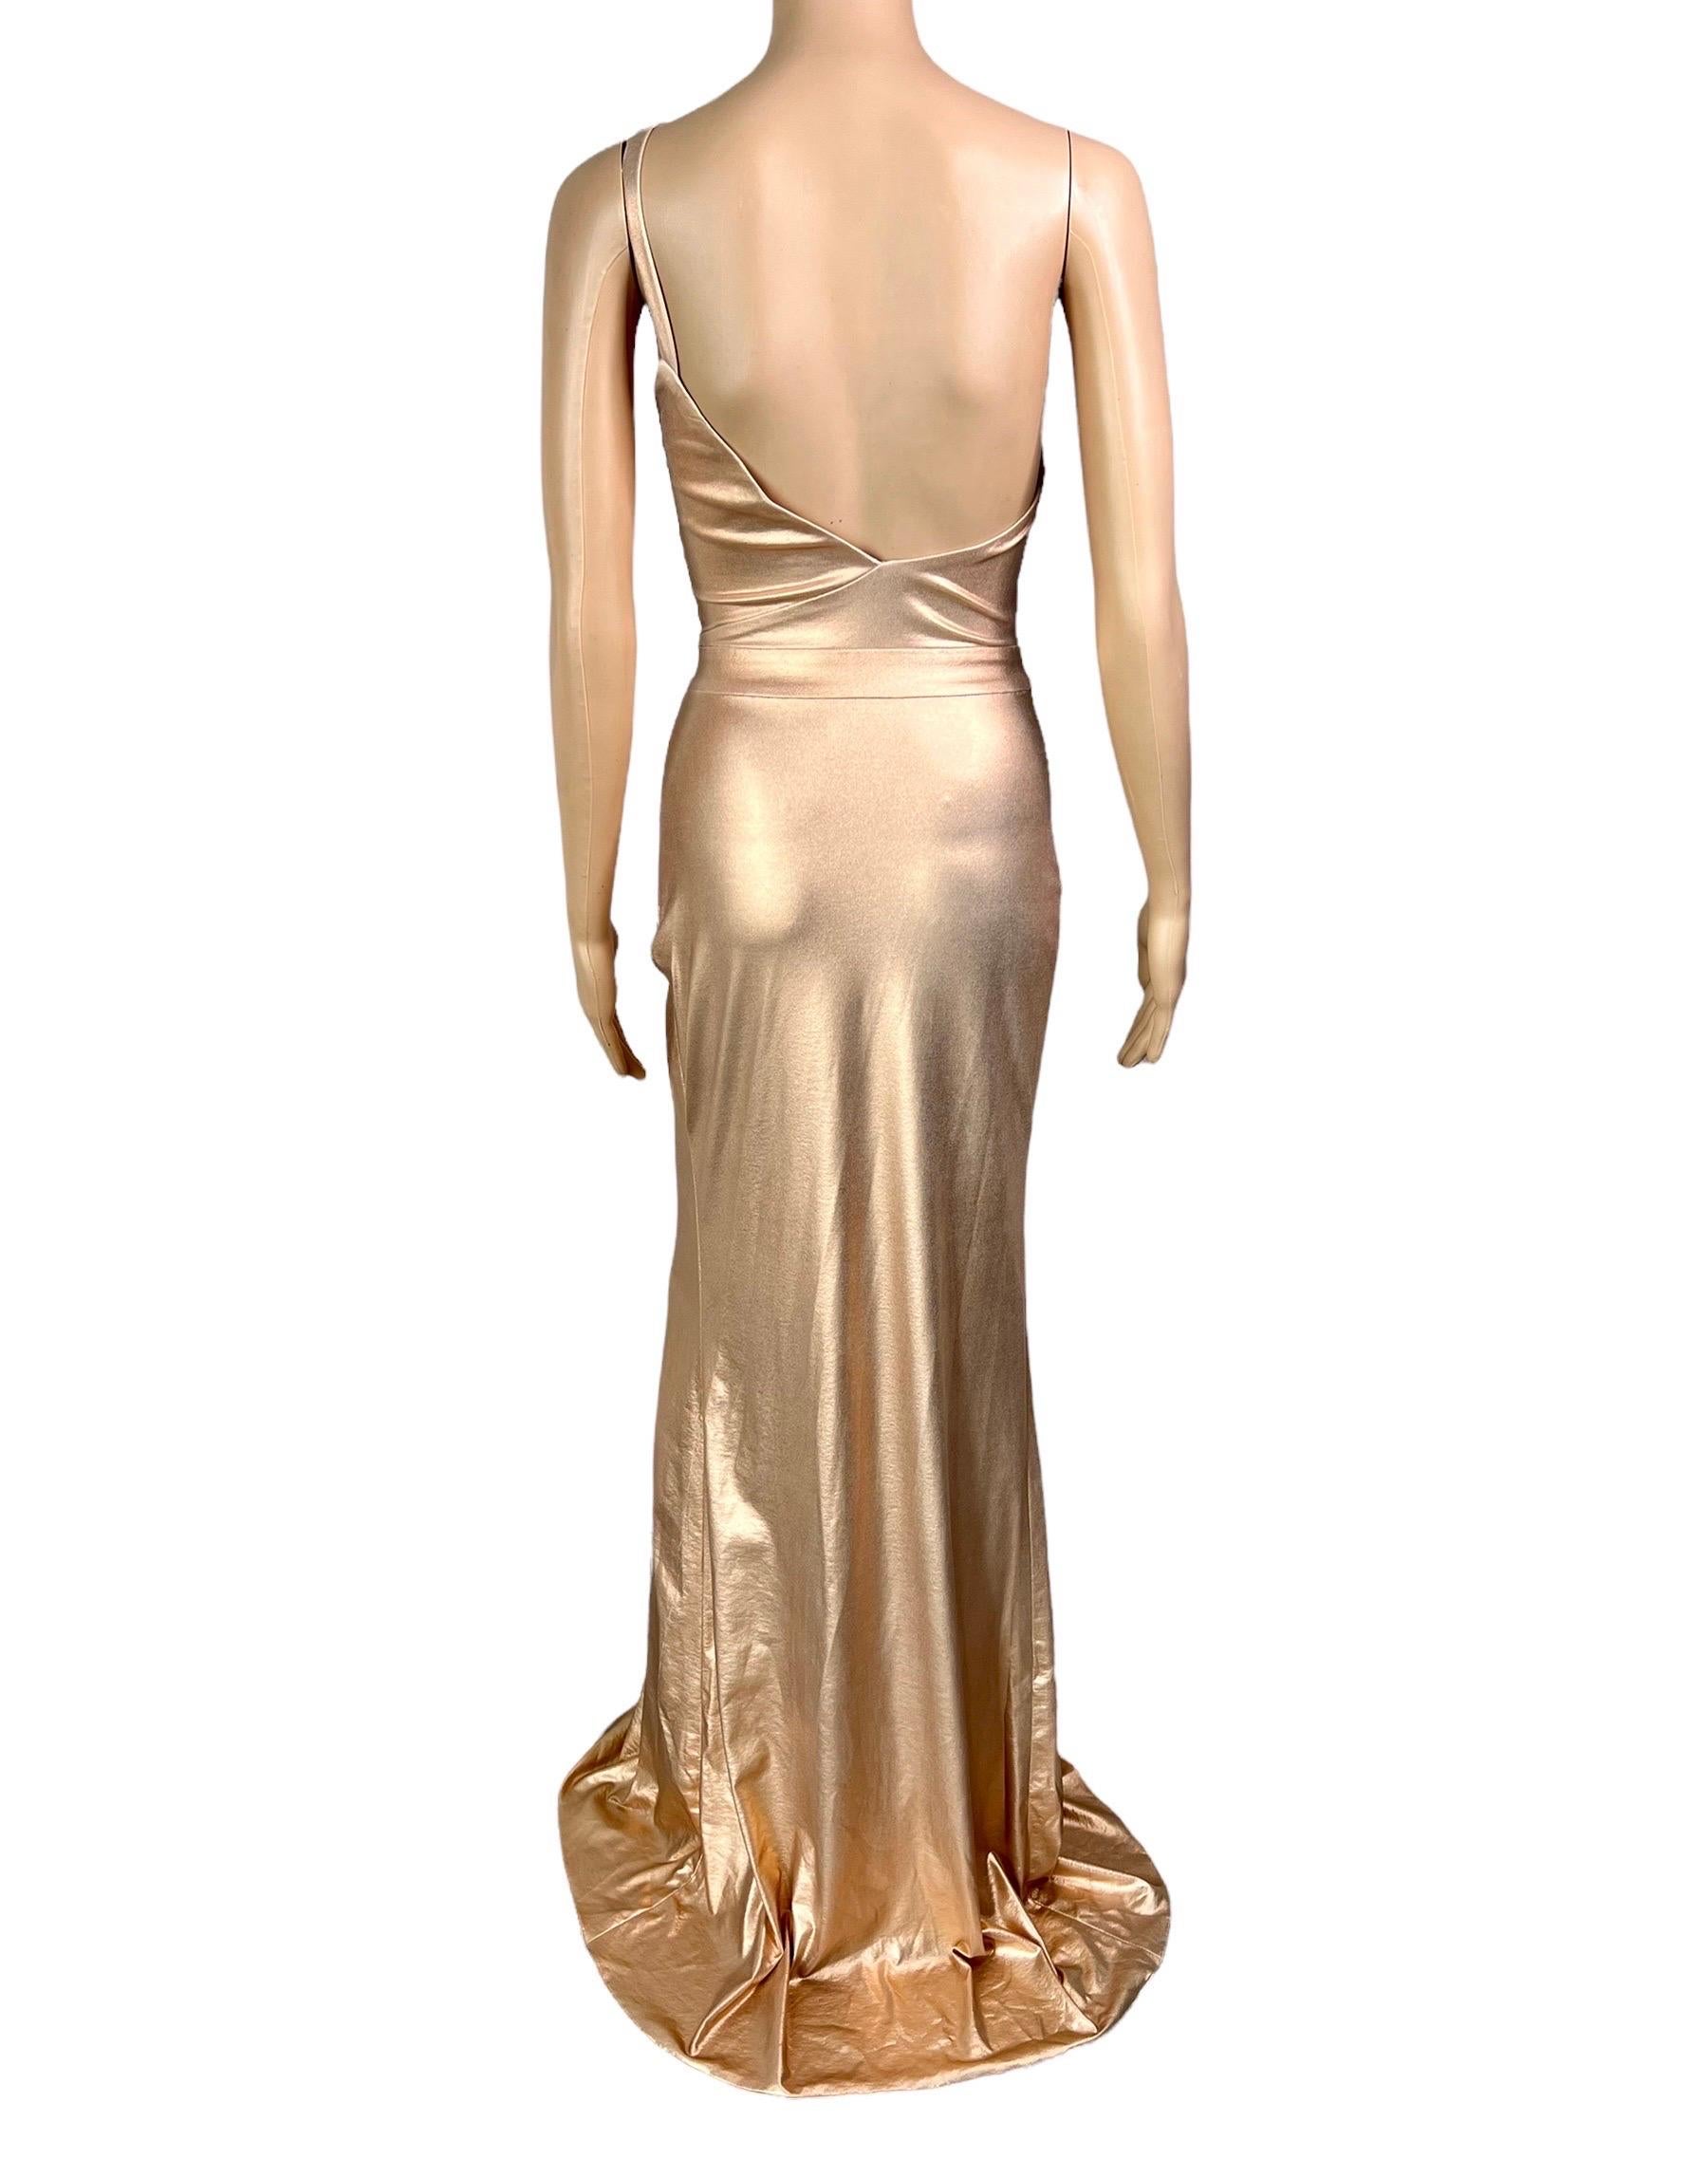 Versace c.2013 Wet Liquid Look Bodycon Metallic Rose Gold Evening Dress Gown 12